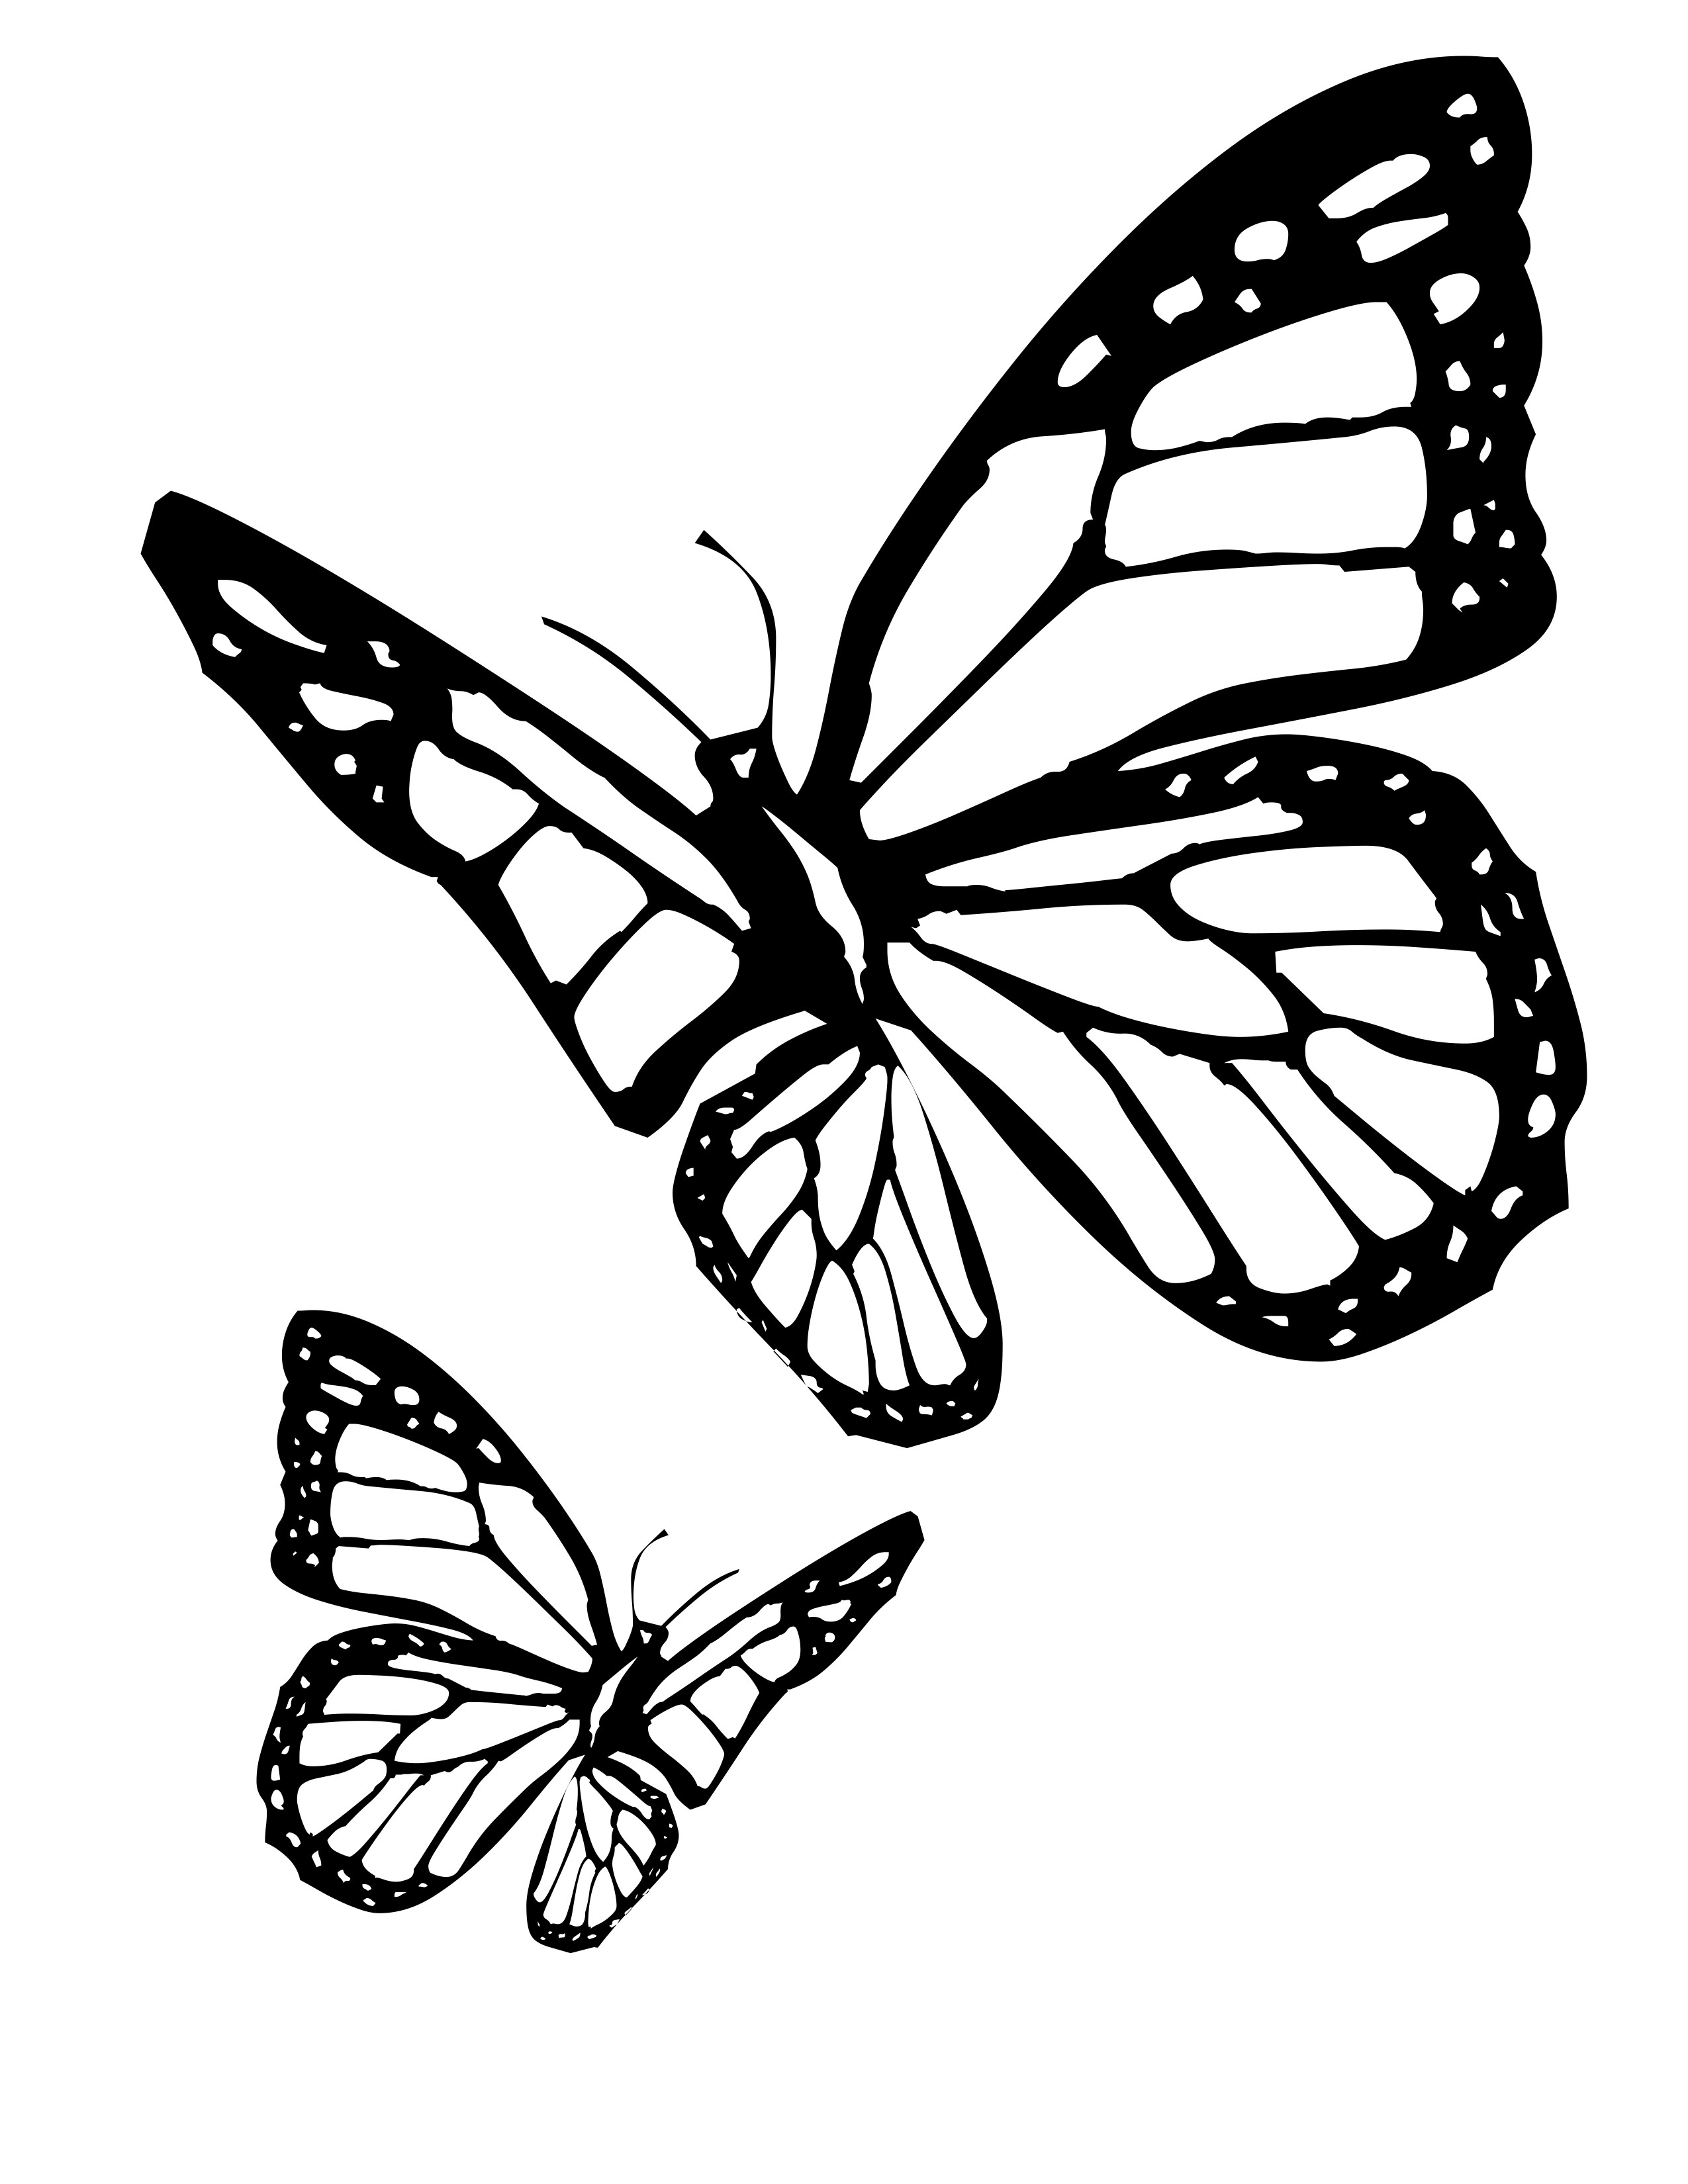 Dessin de papillon gratuit à imprimer et colorier